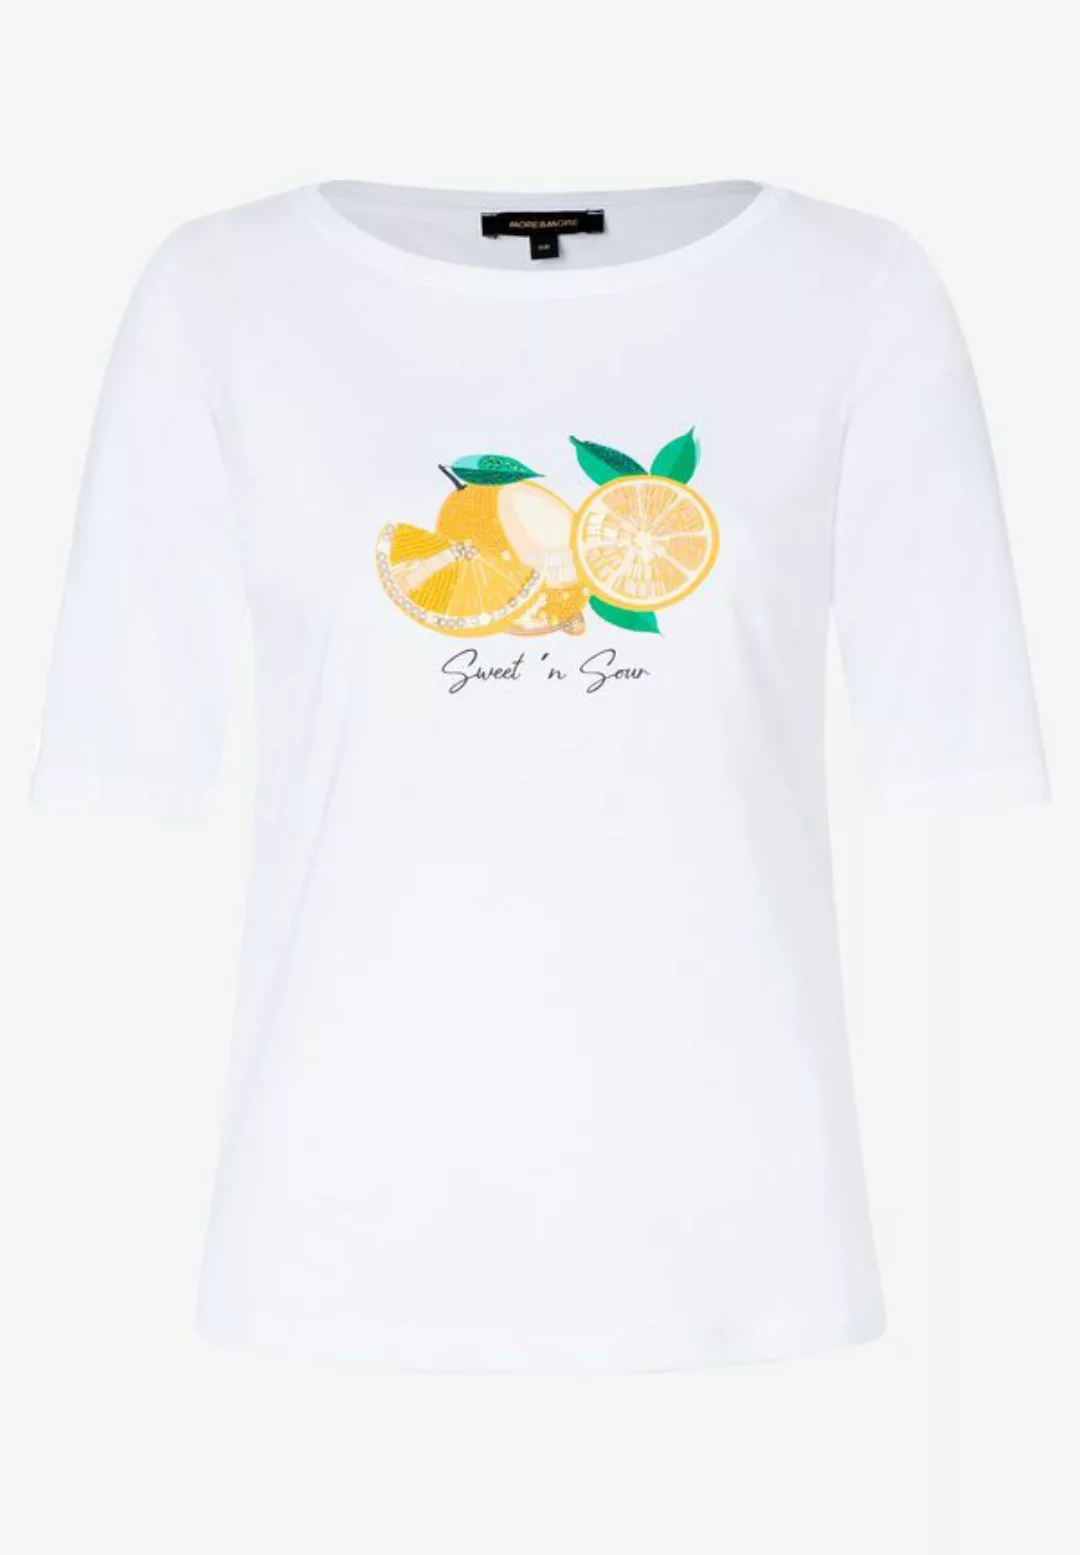 T-Shirt, Zitronen-Applikation, Sommer-Kollektion günstig online kaufen